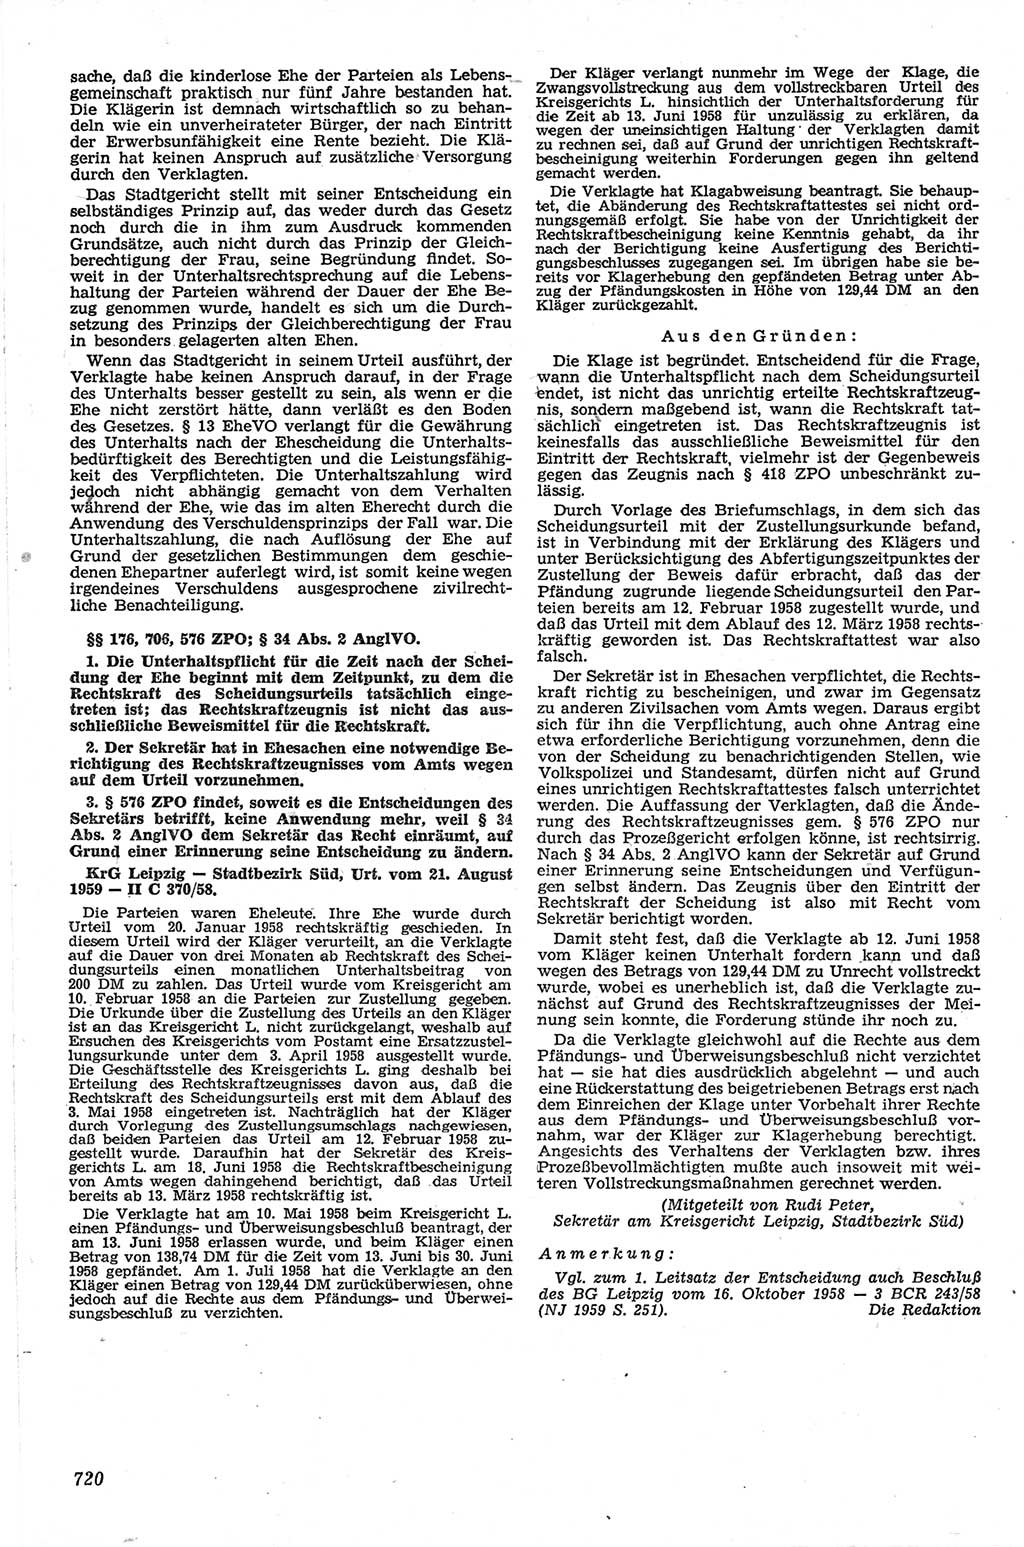 Neue Justiz (NJ), Zeitschrift für Recht und Rechtswissenschaft [Deutsche Demokratische Republik (DDR)], 13. Jahrgang 1959, Seite 720 (NJ DDR 1959, S. 720)